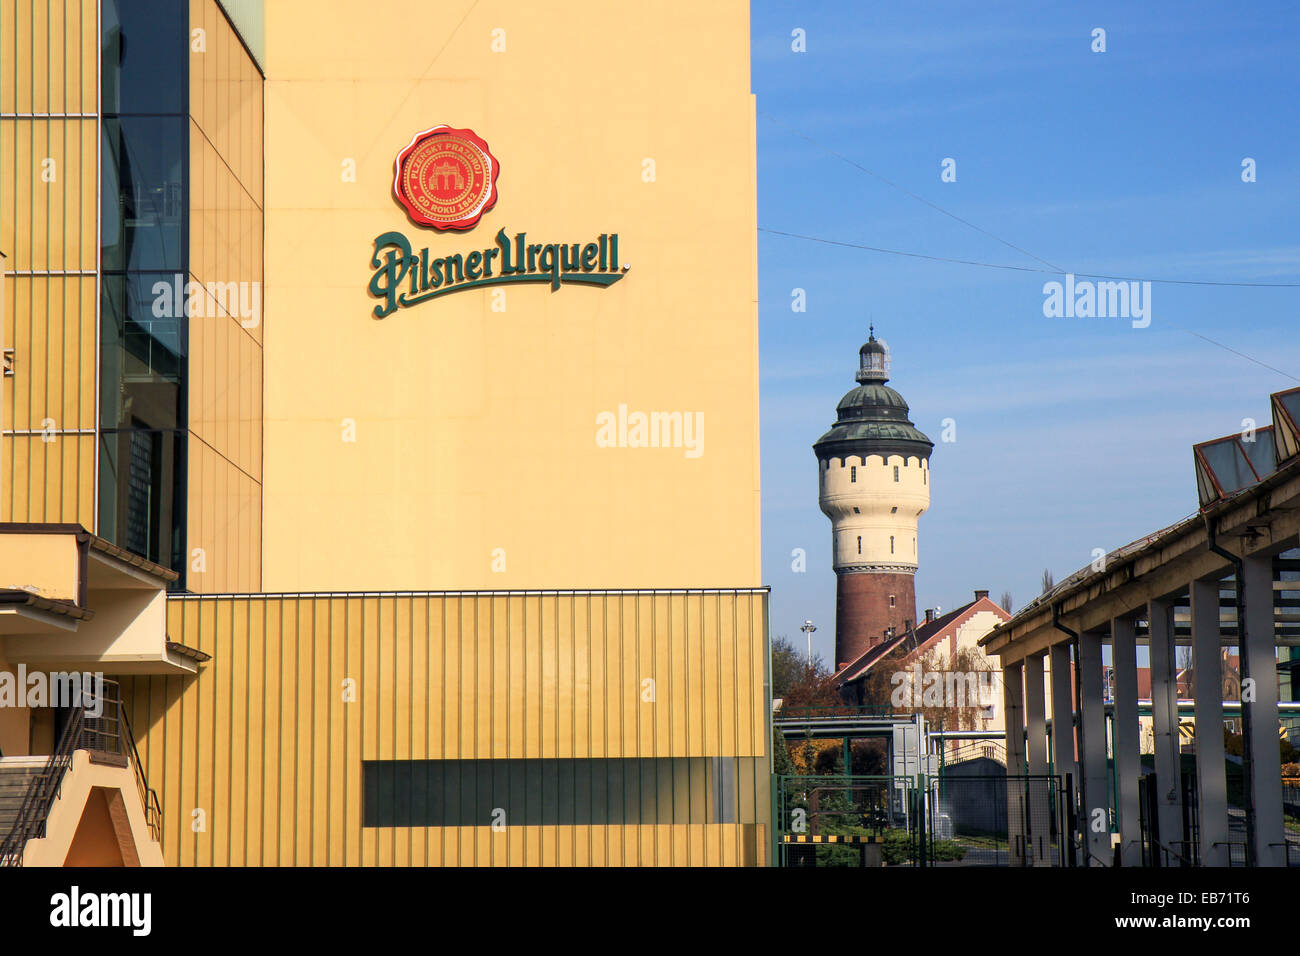 Czech Republic: Main buildings of Pilsner Urquell brewery, Pilsen. Photo from 8. November 2014 Stock Photo